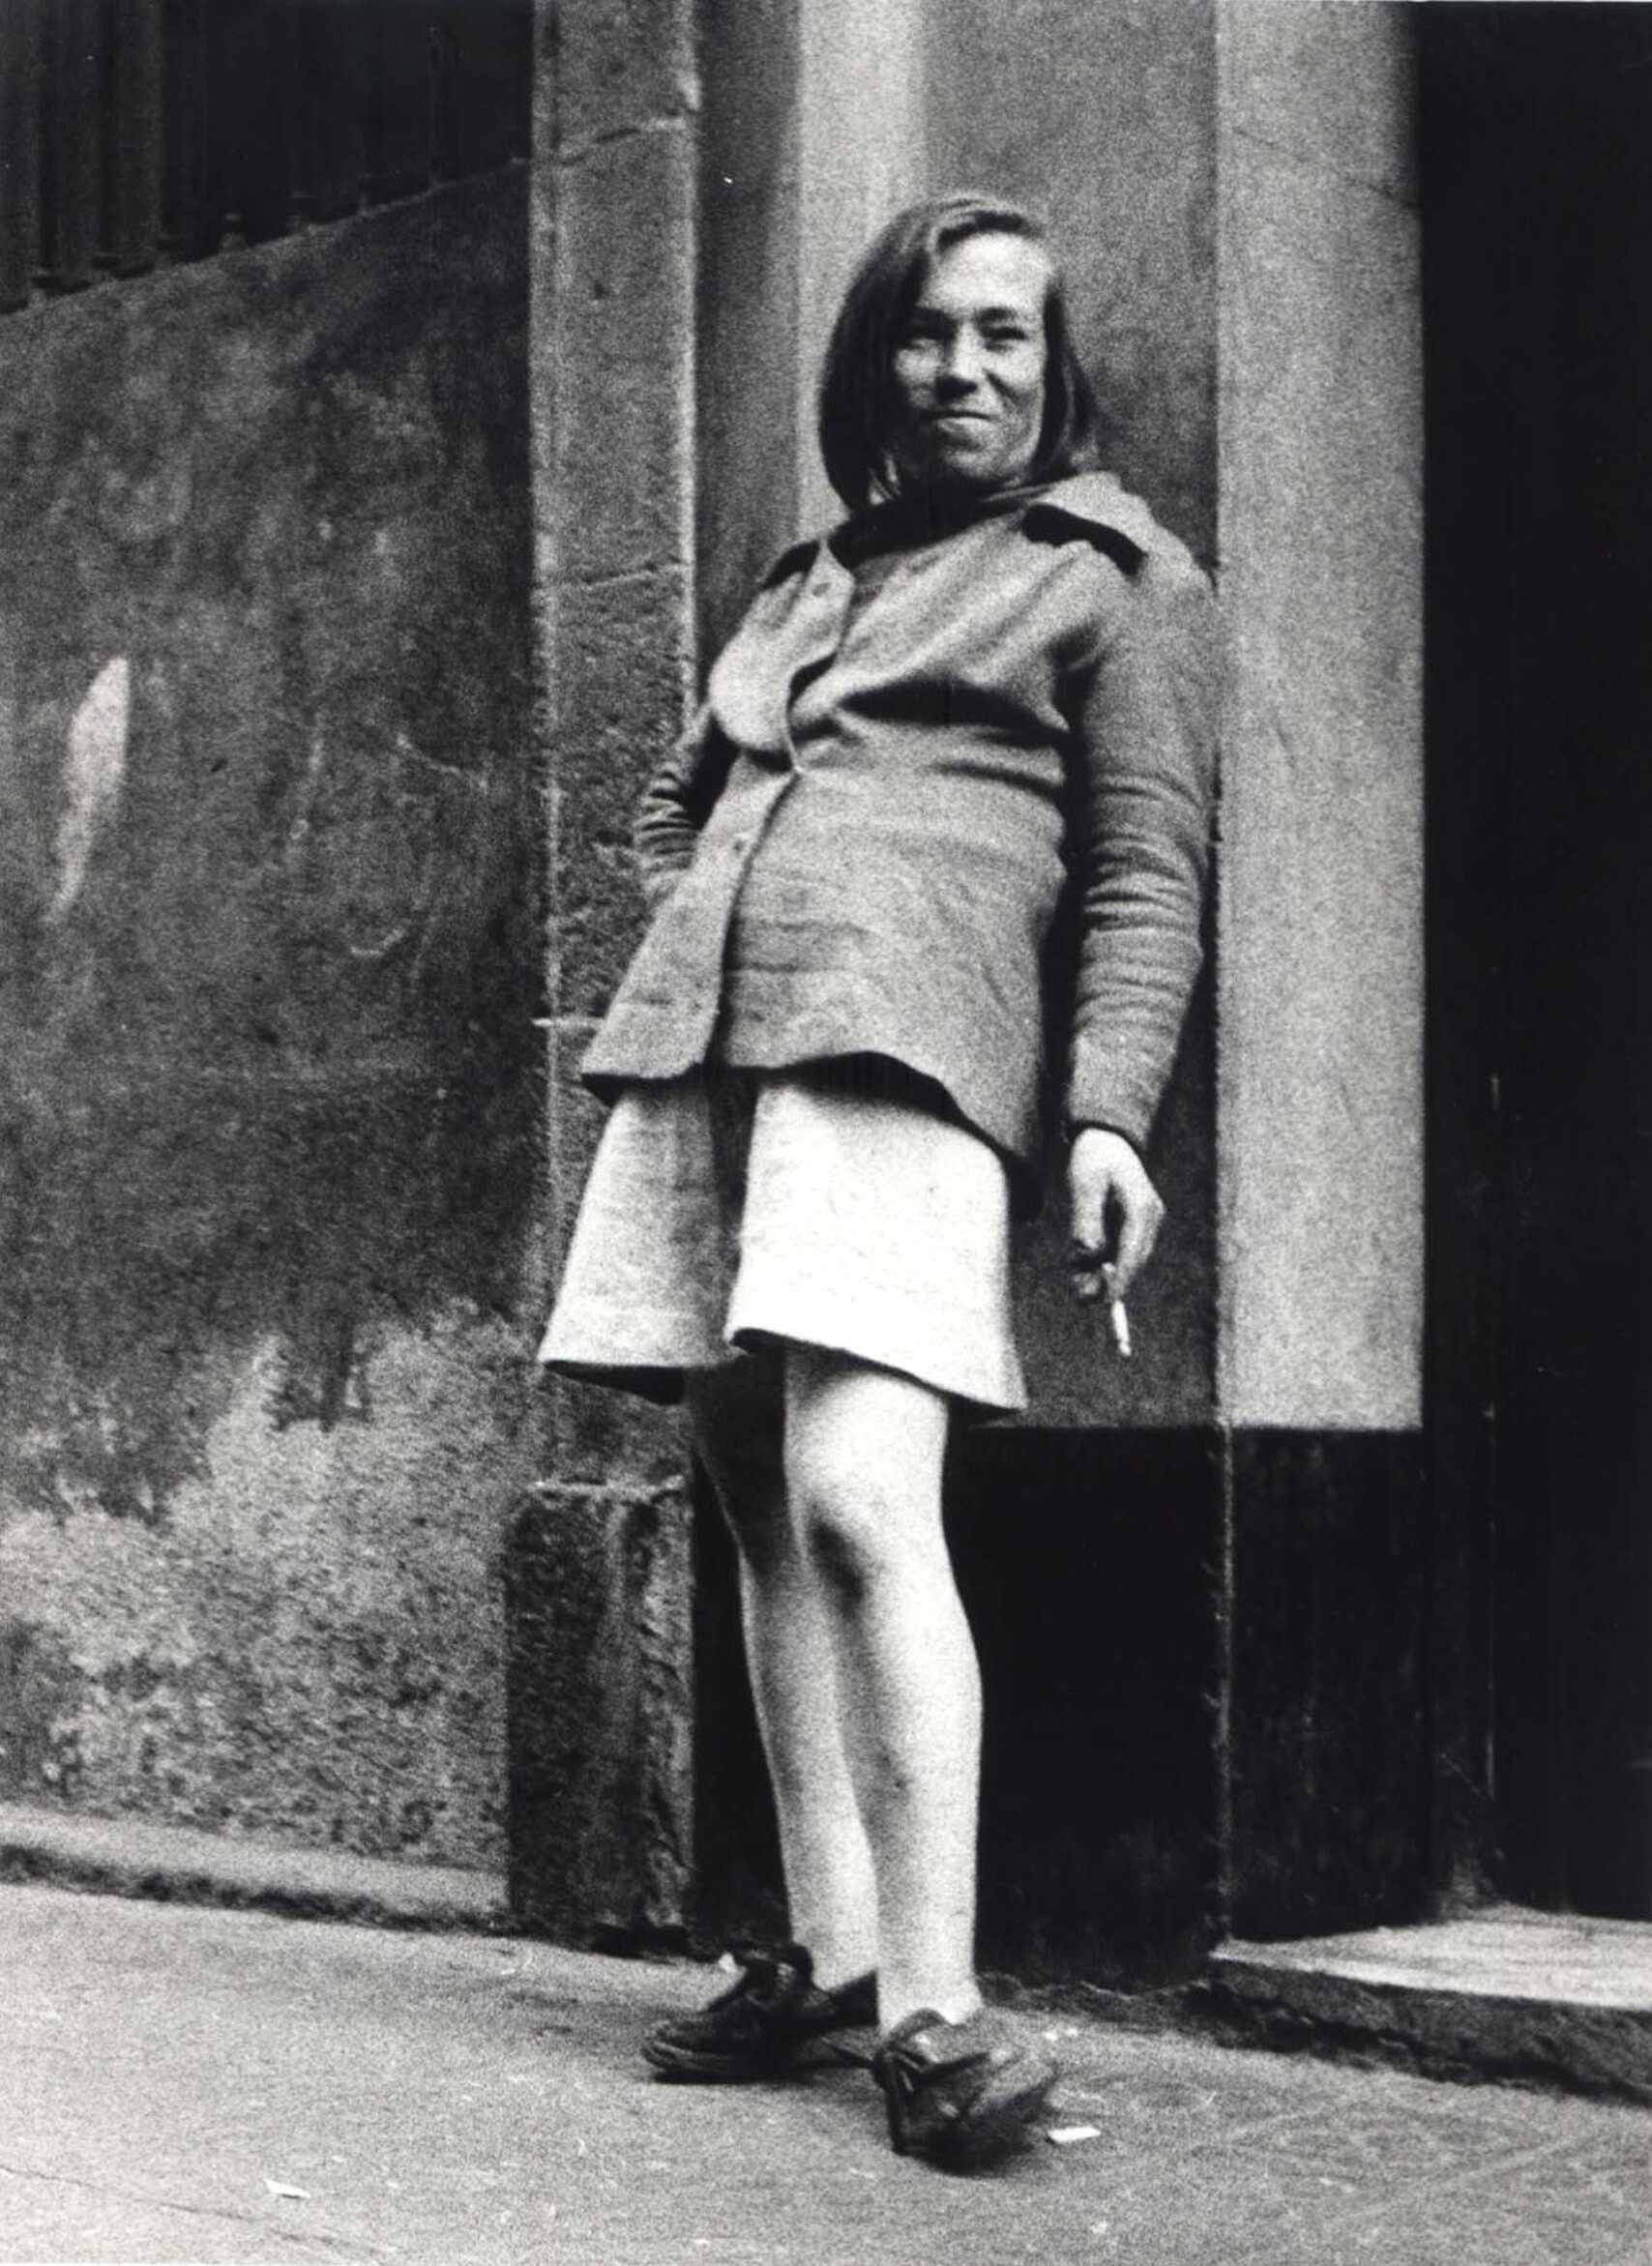 Проститутка в Китайском квартале, Барселона, ок. 1964. Фотограф Жоан Колом